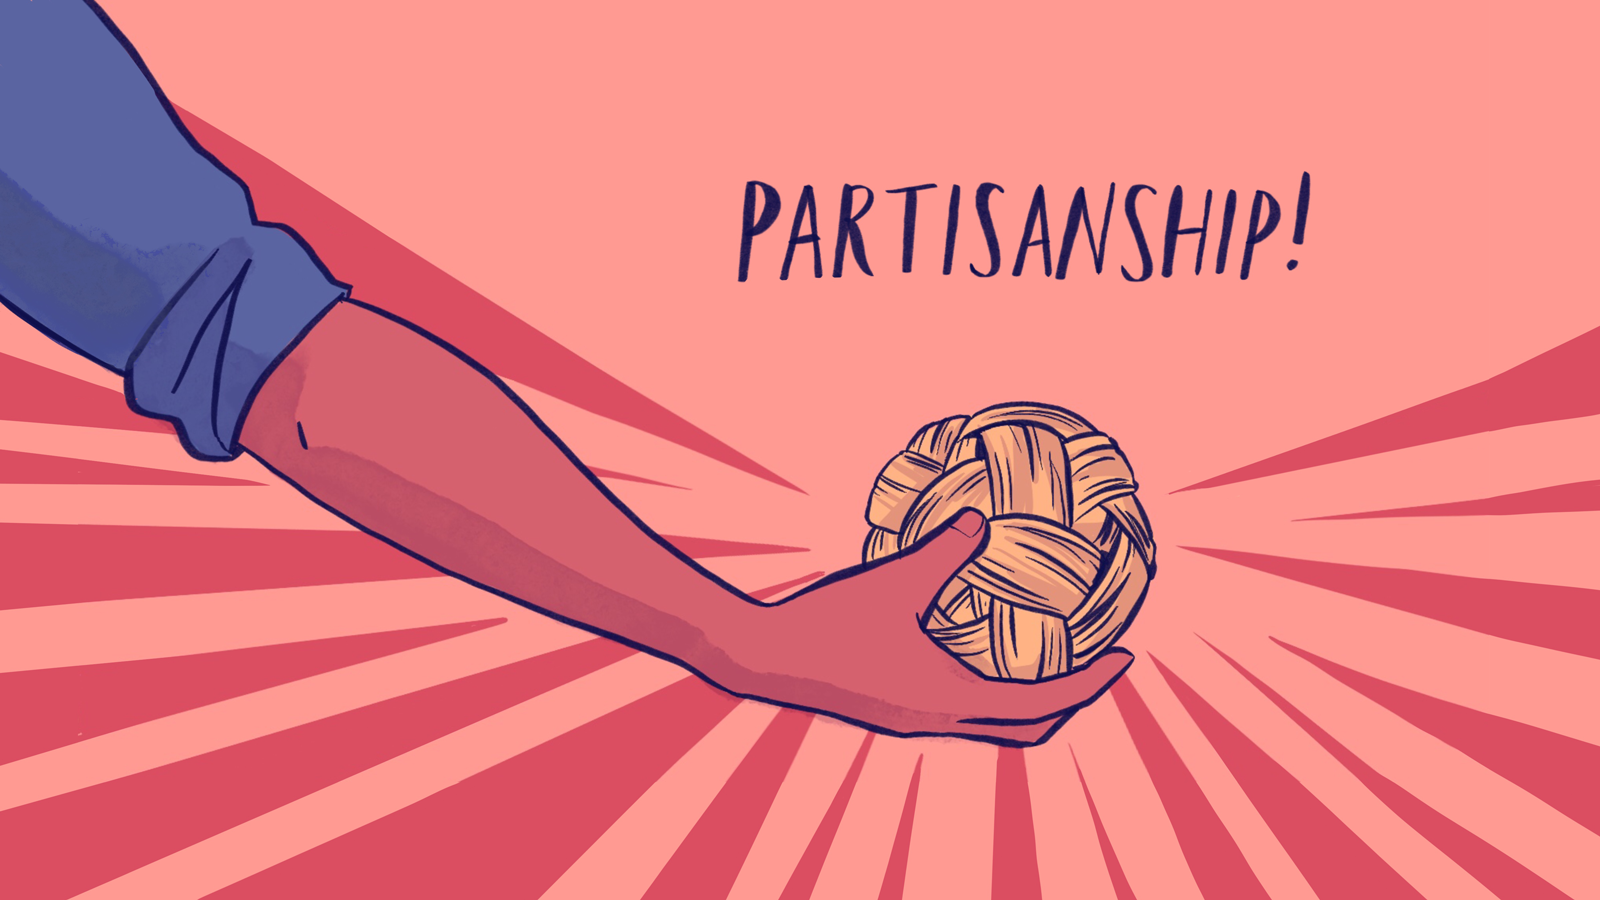 On Partisanship - New Naratif